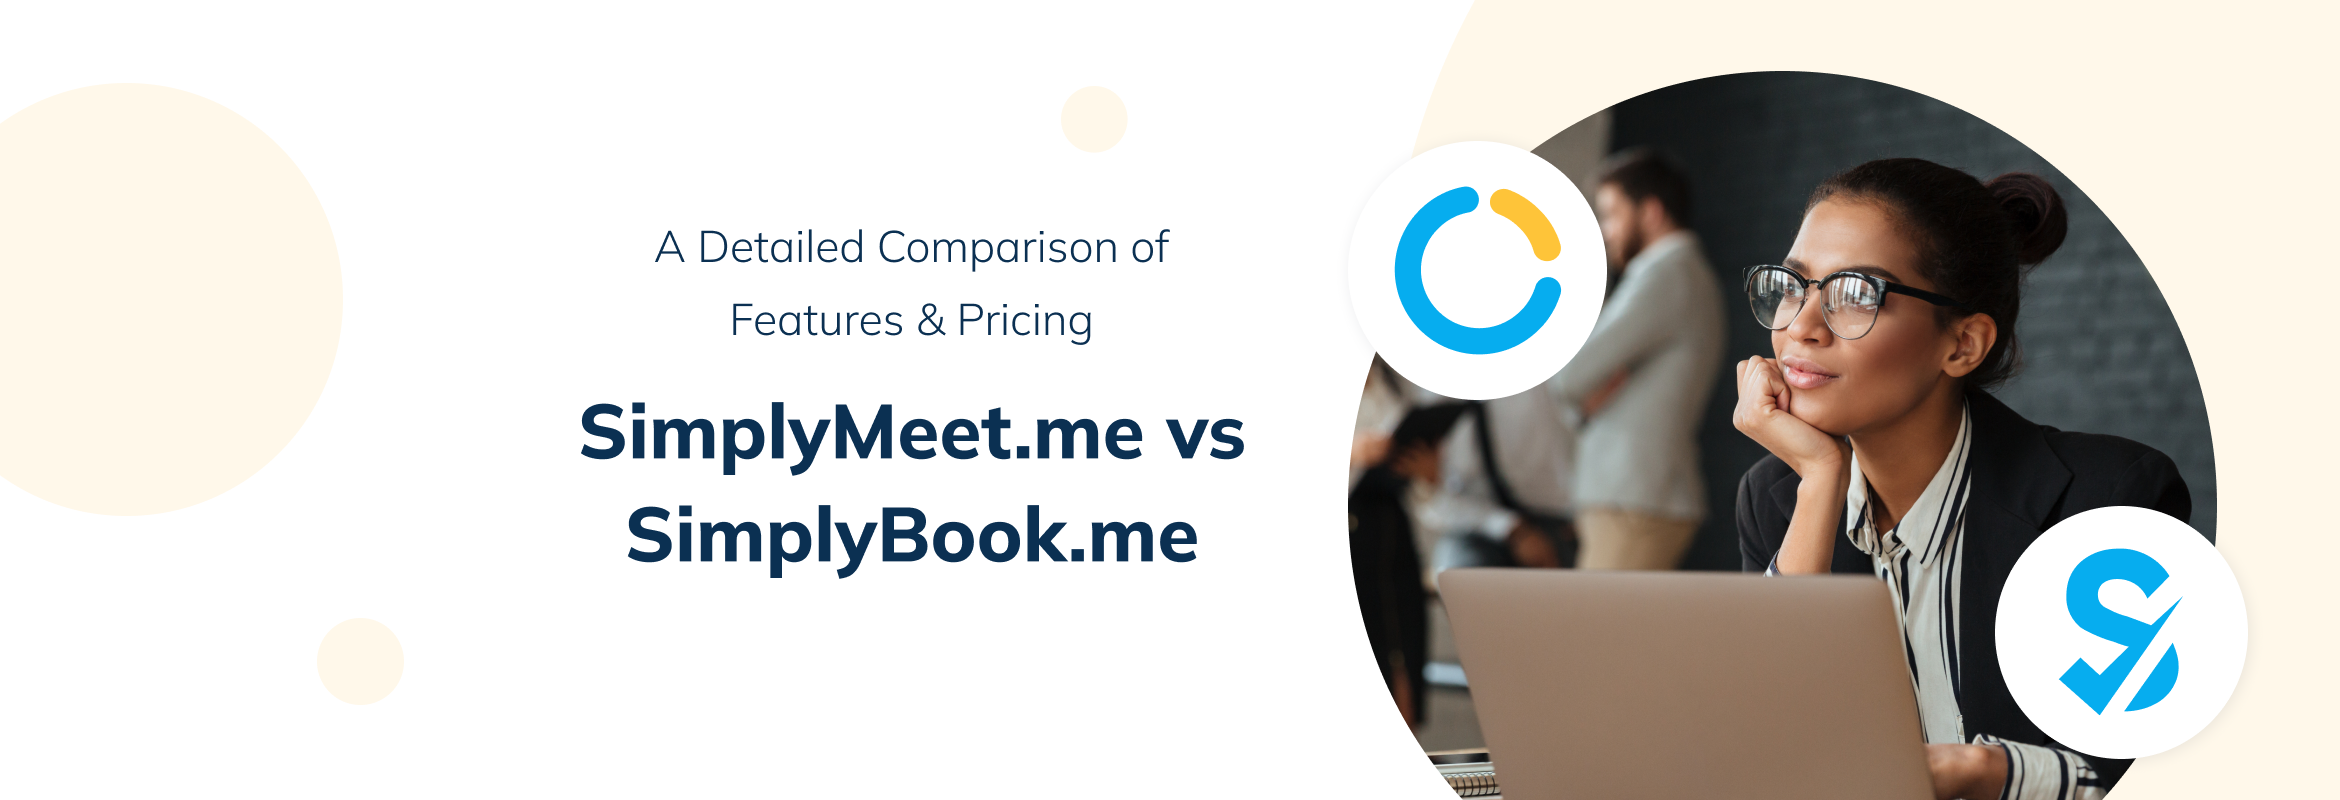 SimplyMeet.me vs SimplyBook.me